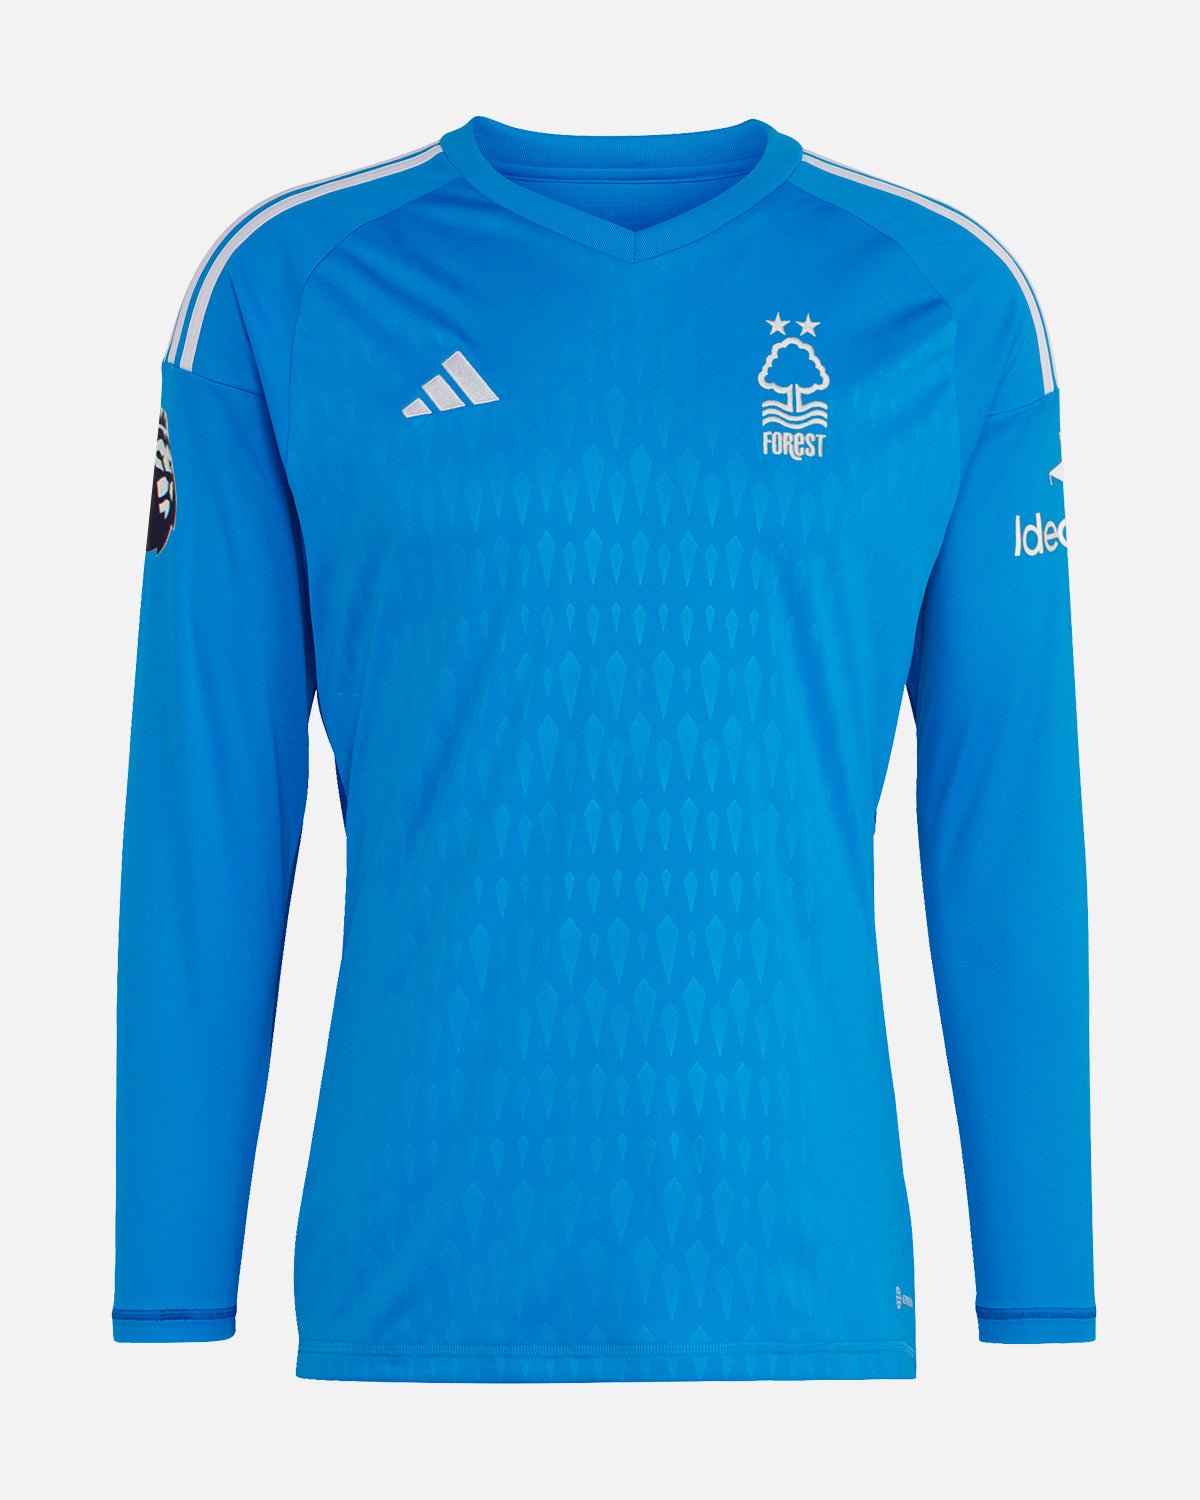 NFFC Junior Blue Goalkeeper Shirt 23-24 - G. Shelvey 38 - Nottingham Forest FC